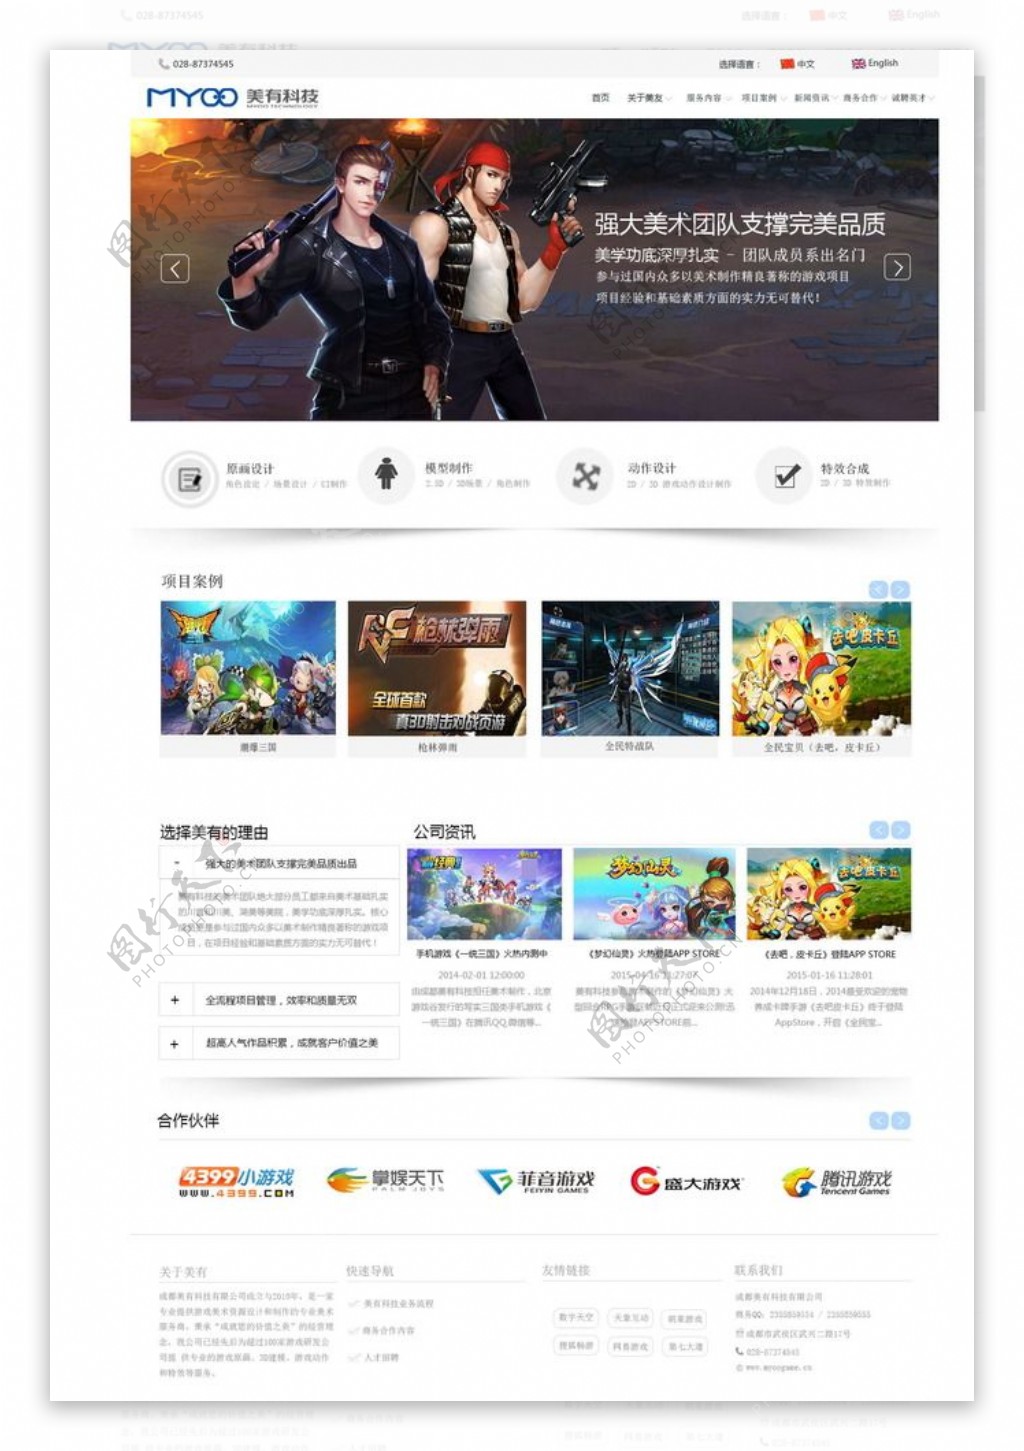 美由游戏网页设计UI界面